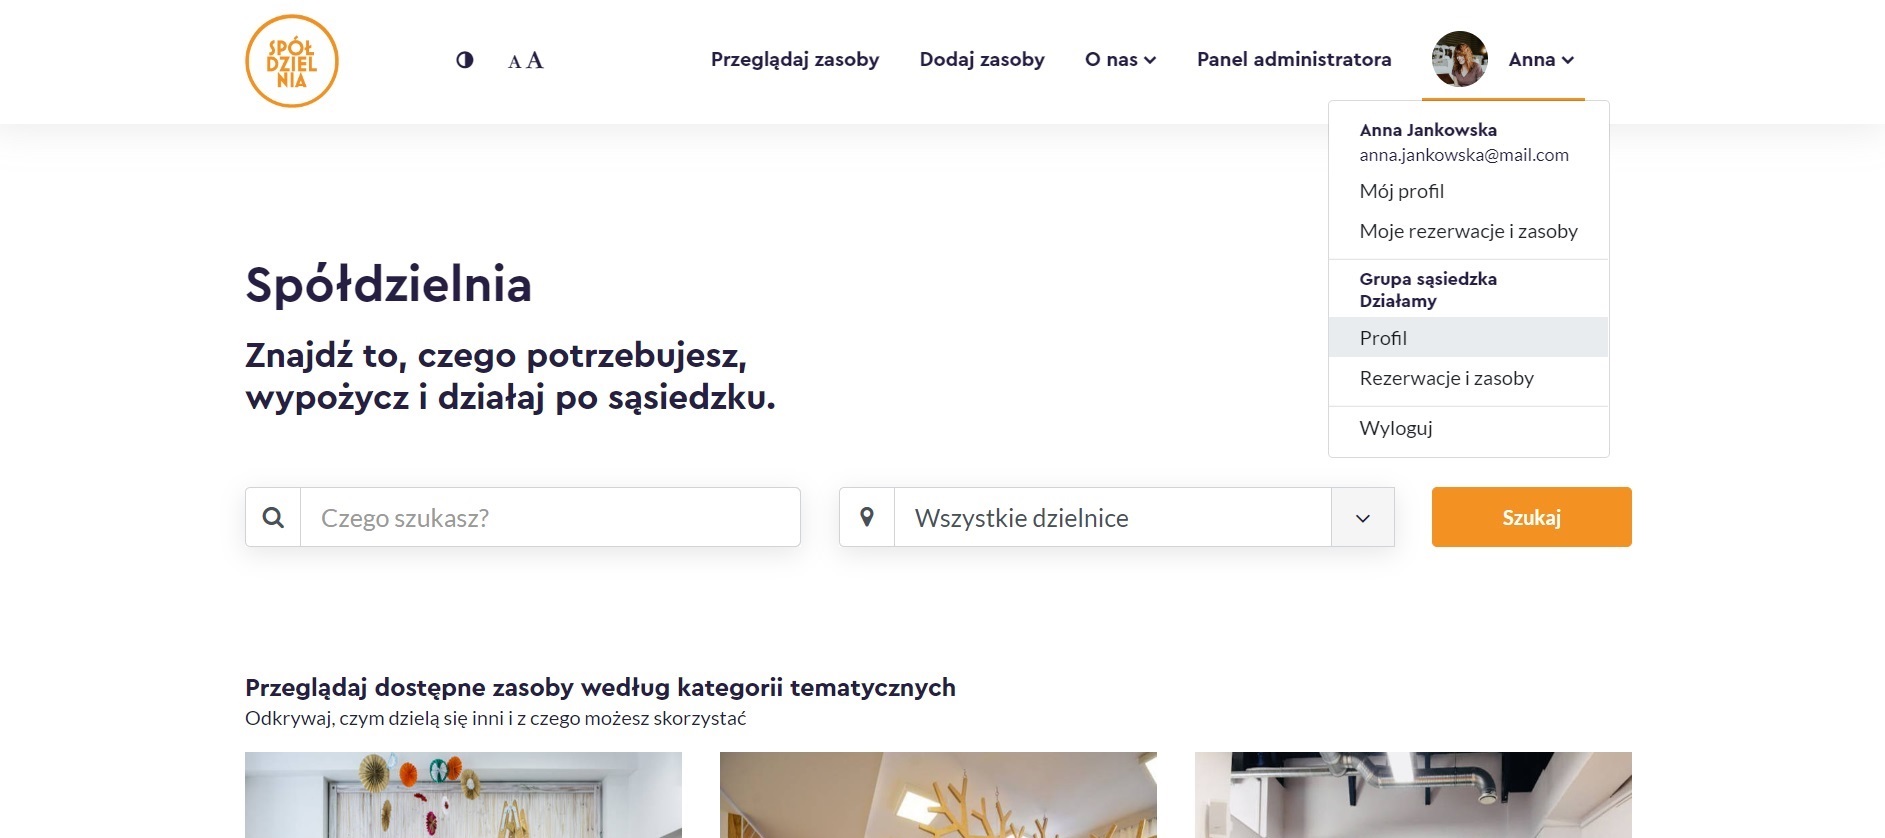 Zrzut ekranu z rozwiniętym menu użytkownika i zaznaczoną pozycją Profil dla organizacji lub instytucji